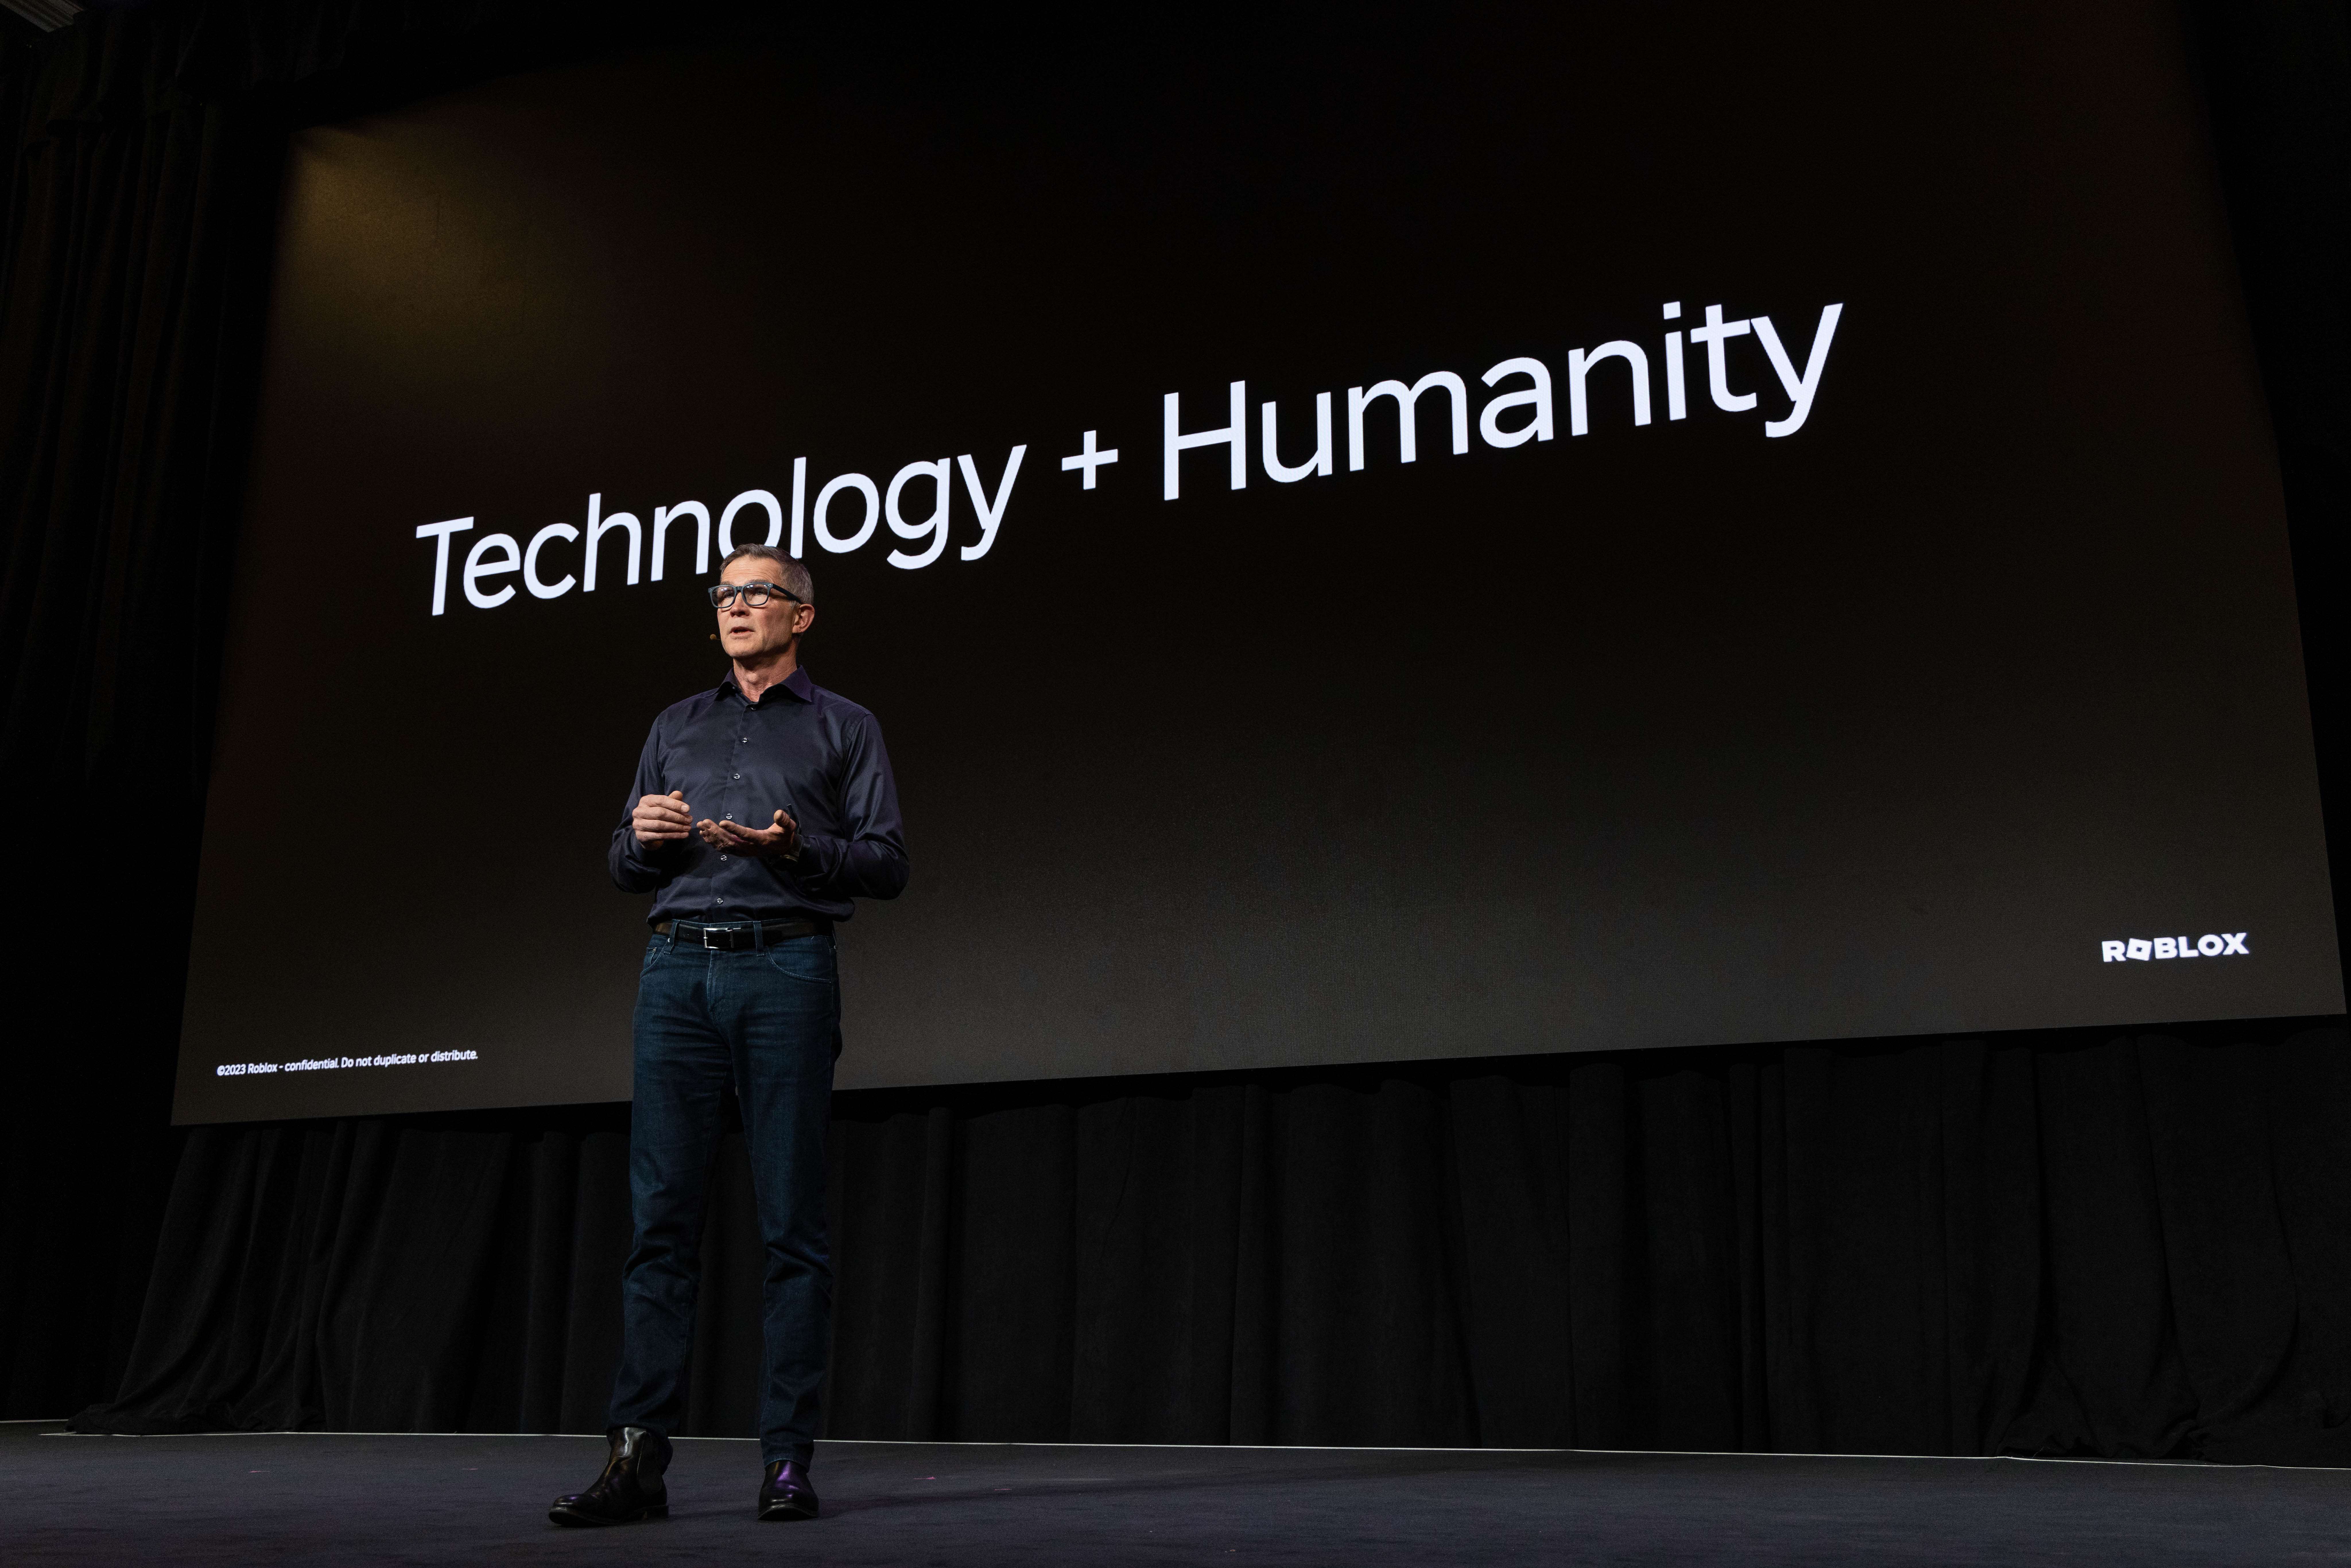 David står på scenen framför en bild där det står Technology + Humanity